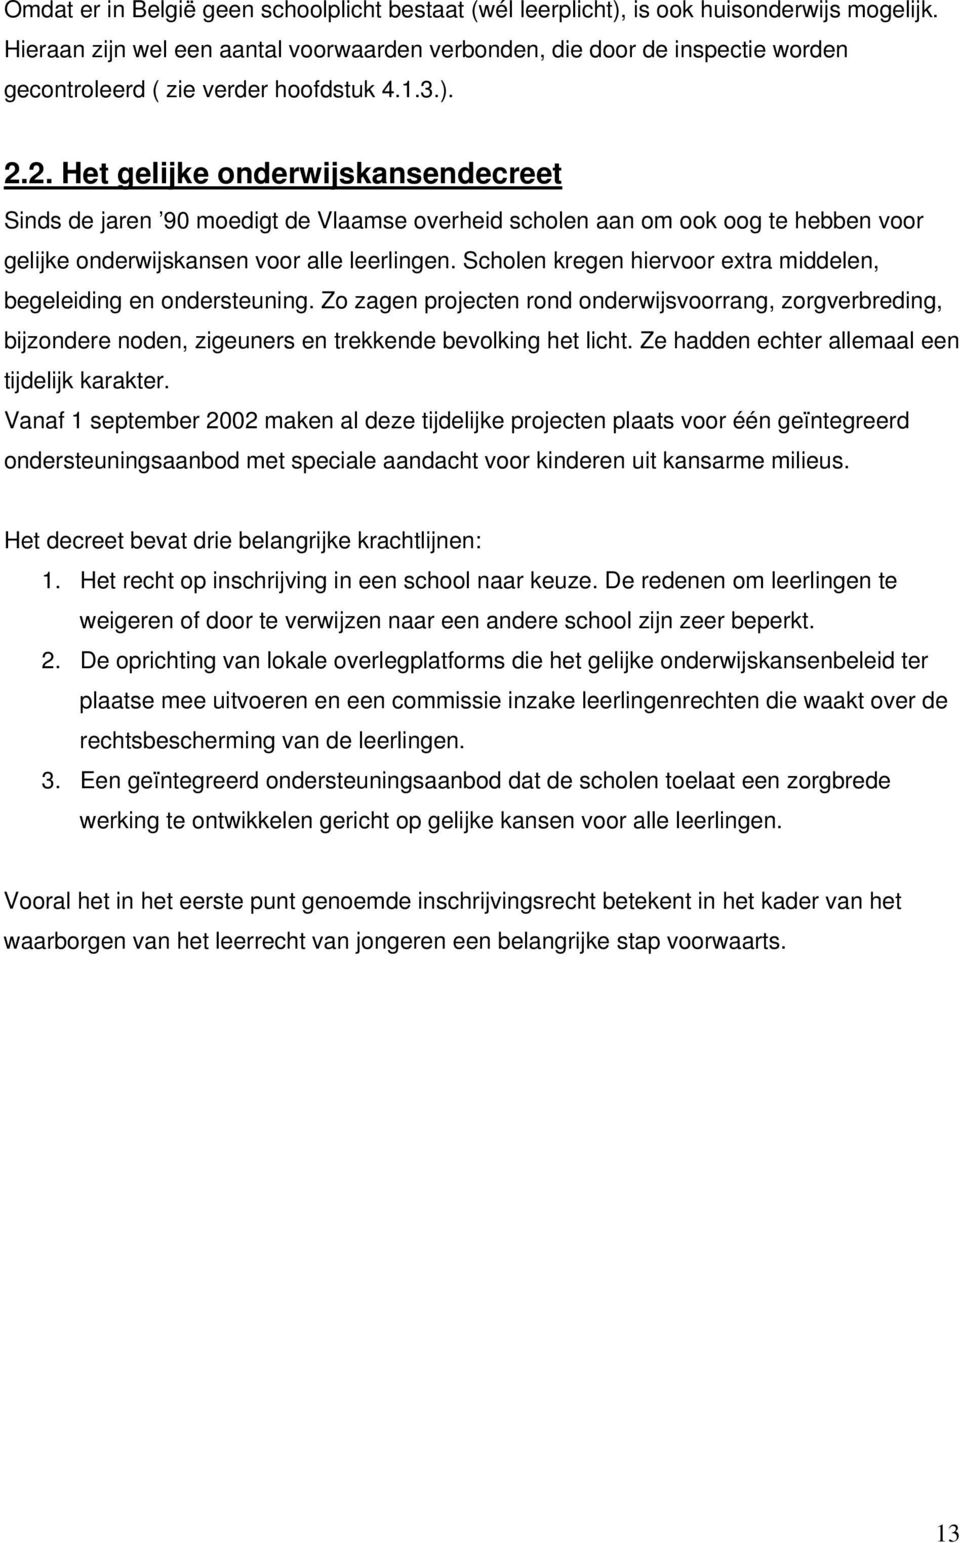 2. Het gelijke onderwijskansendecreet Sinds de jaren 90 moedigt de Vlaamse overheid scholen aan om ook oog te hebben voor gelijke onderwijskansen voor alle leerlingen.